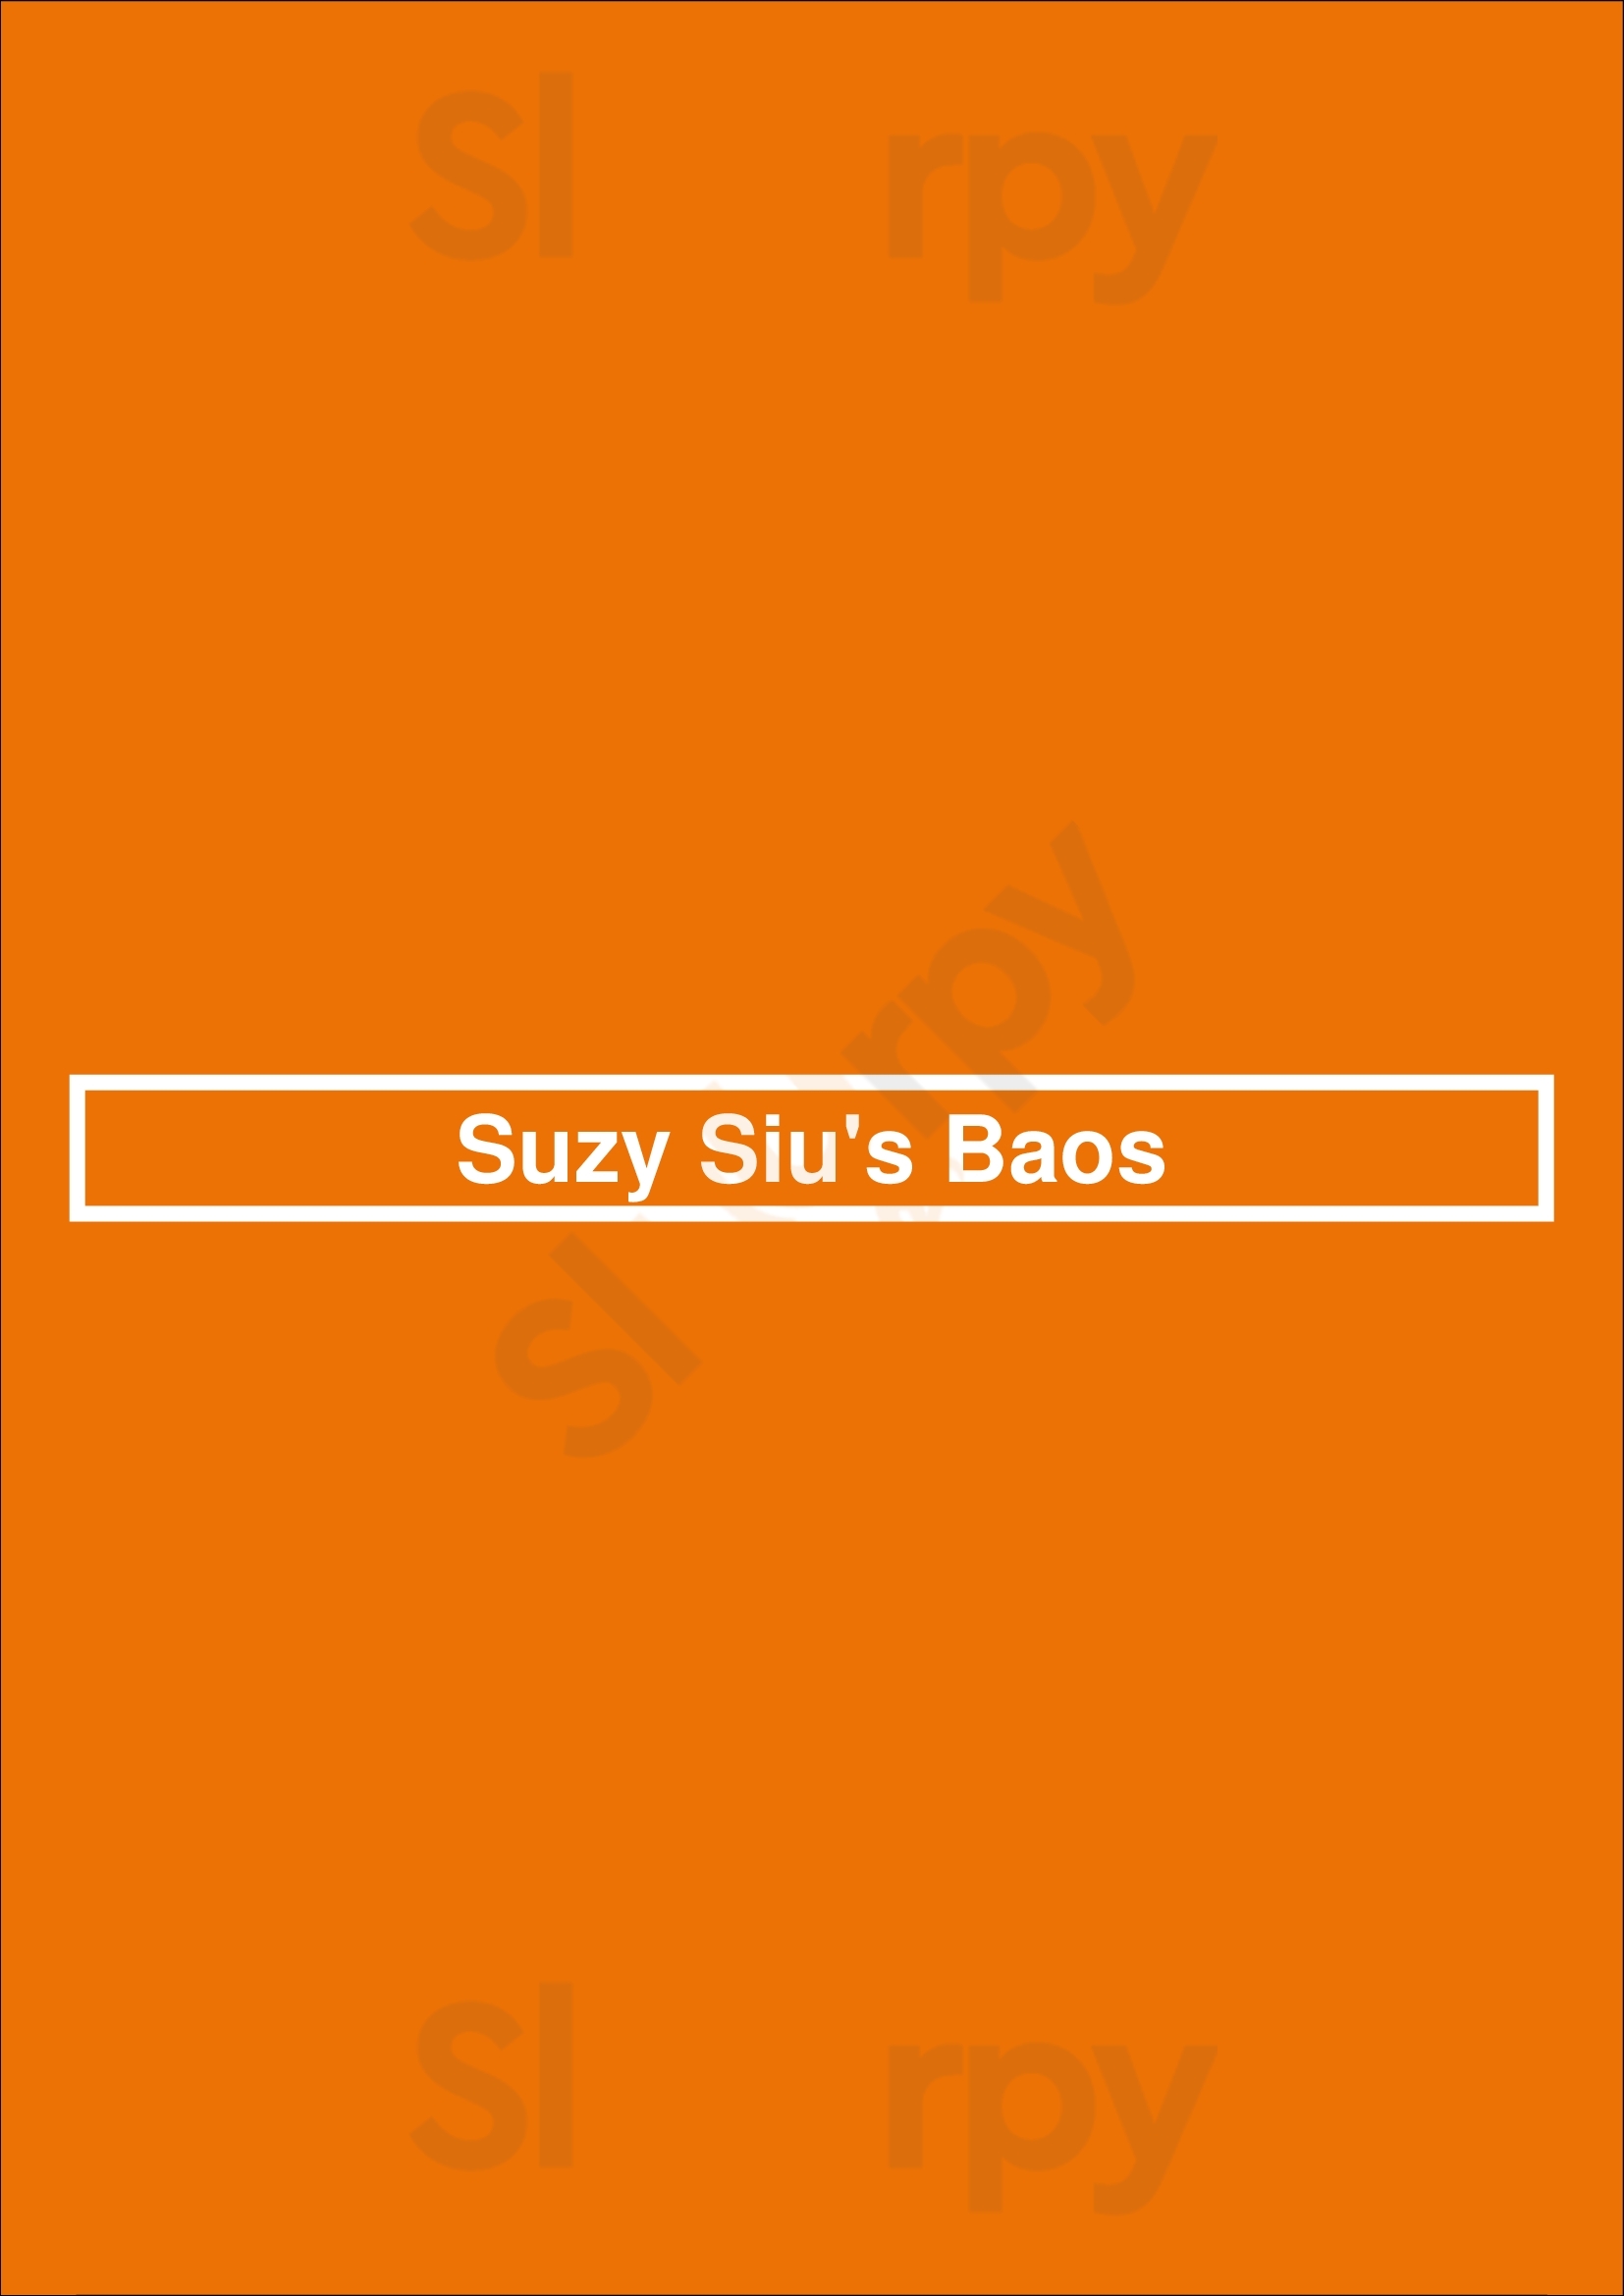 Suzy Siu's Baos Atlanta Menu - 1